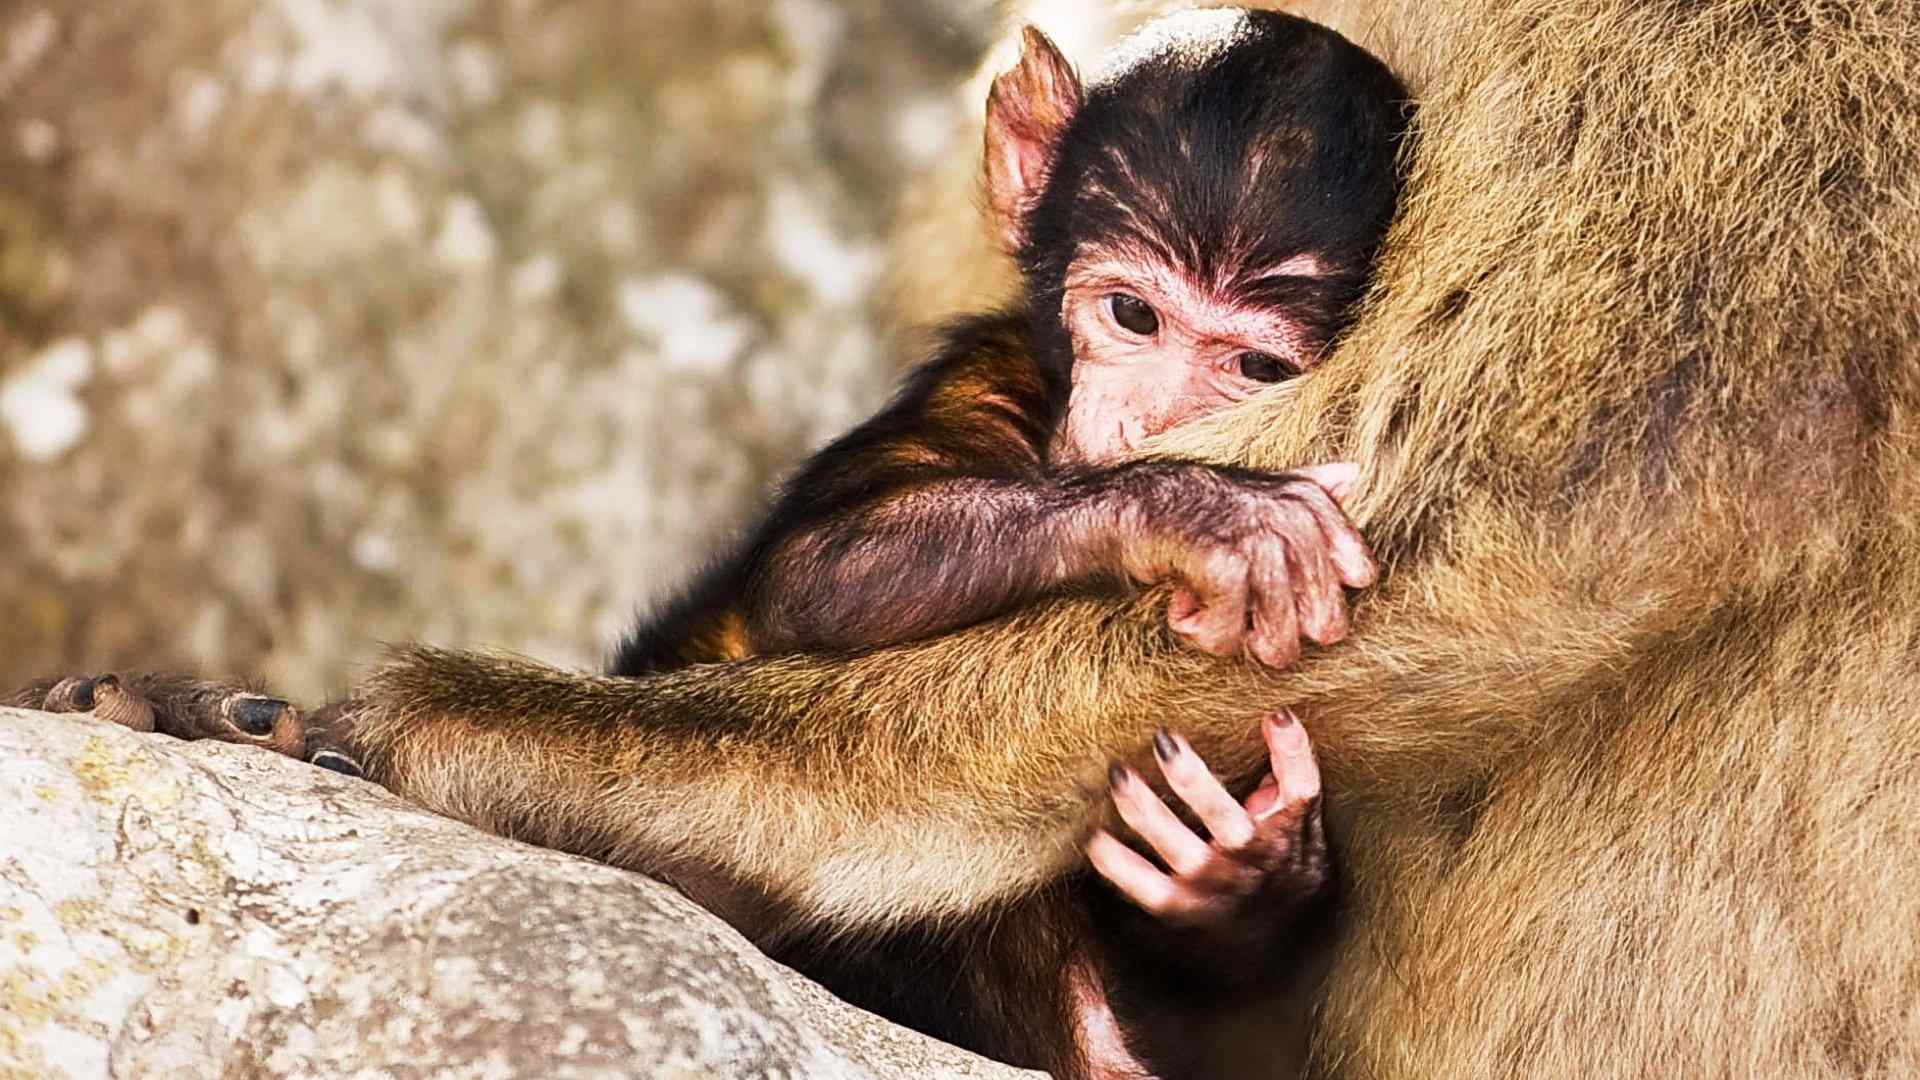 呆萌可爱的小猴子摄影图片高清壁纸